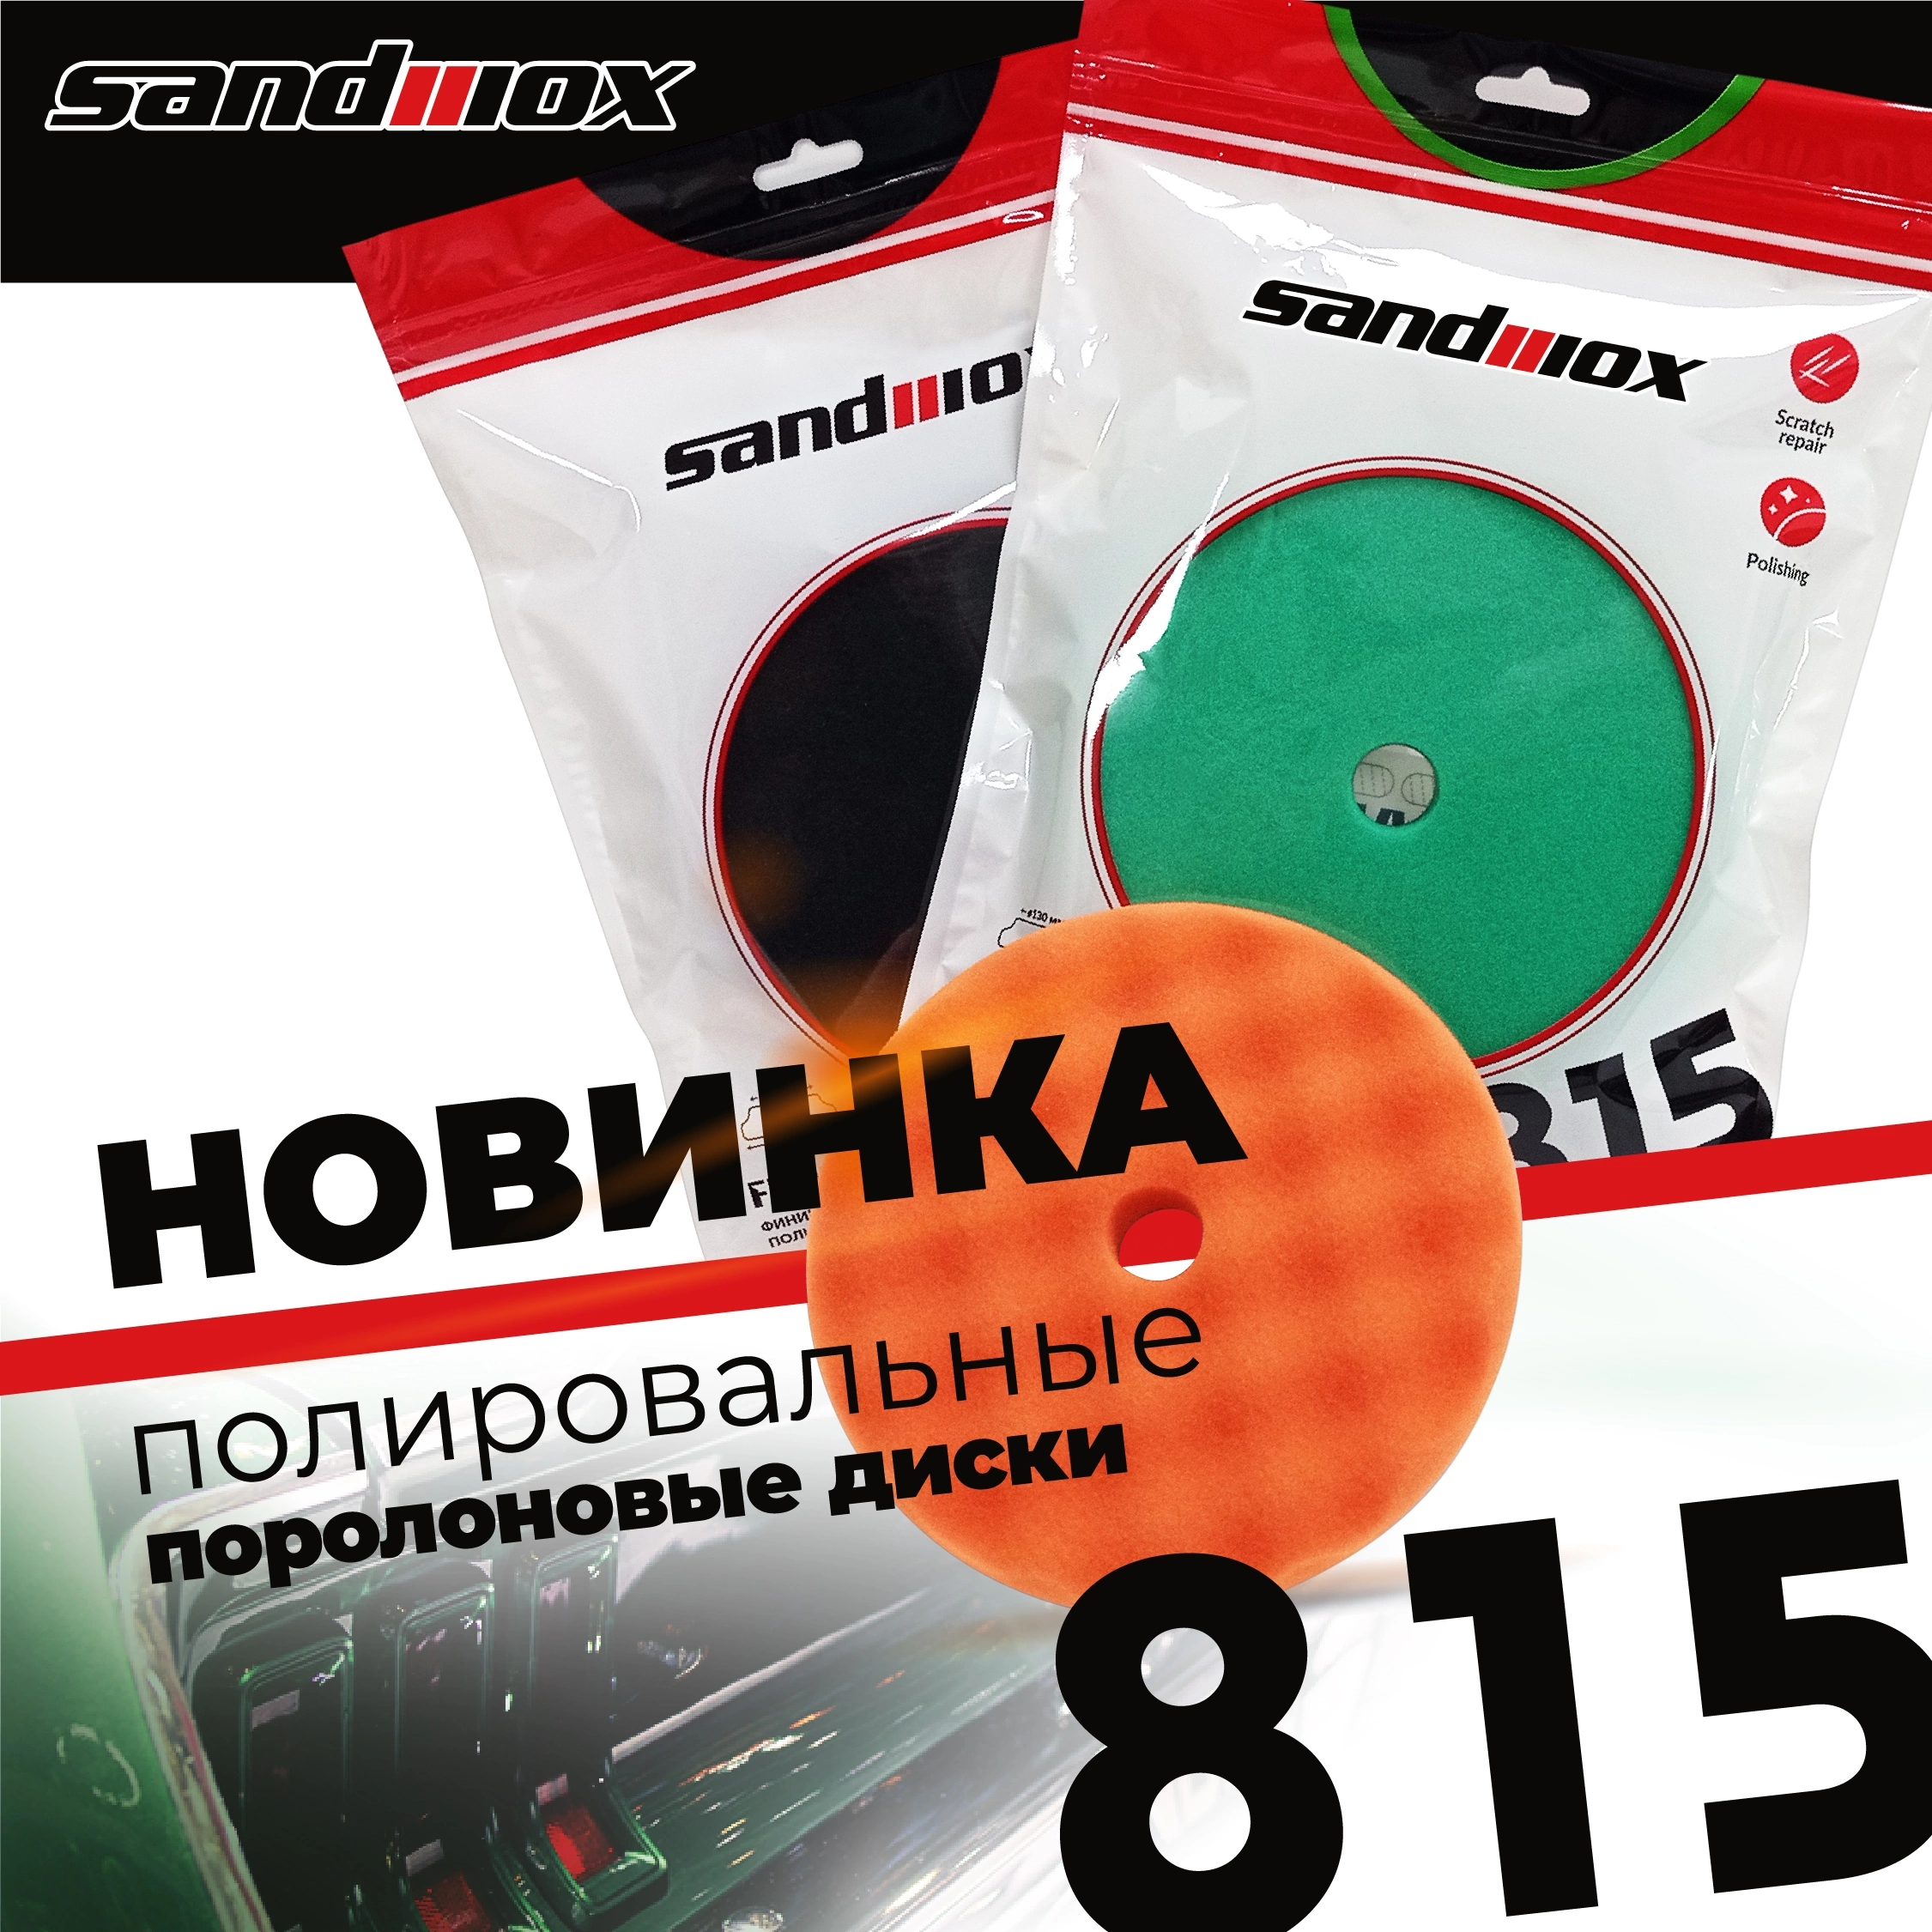 Новинка! Полировальные поролоновые диски SANDWOX 150мм